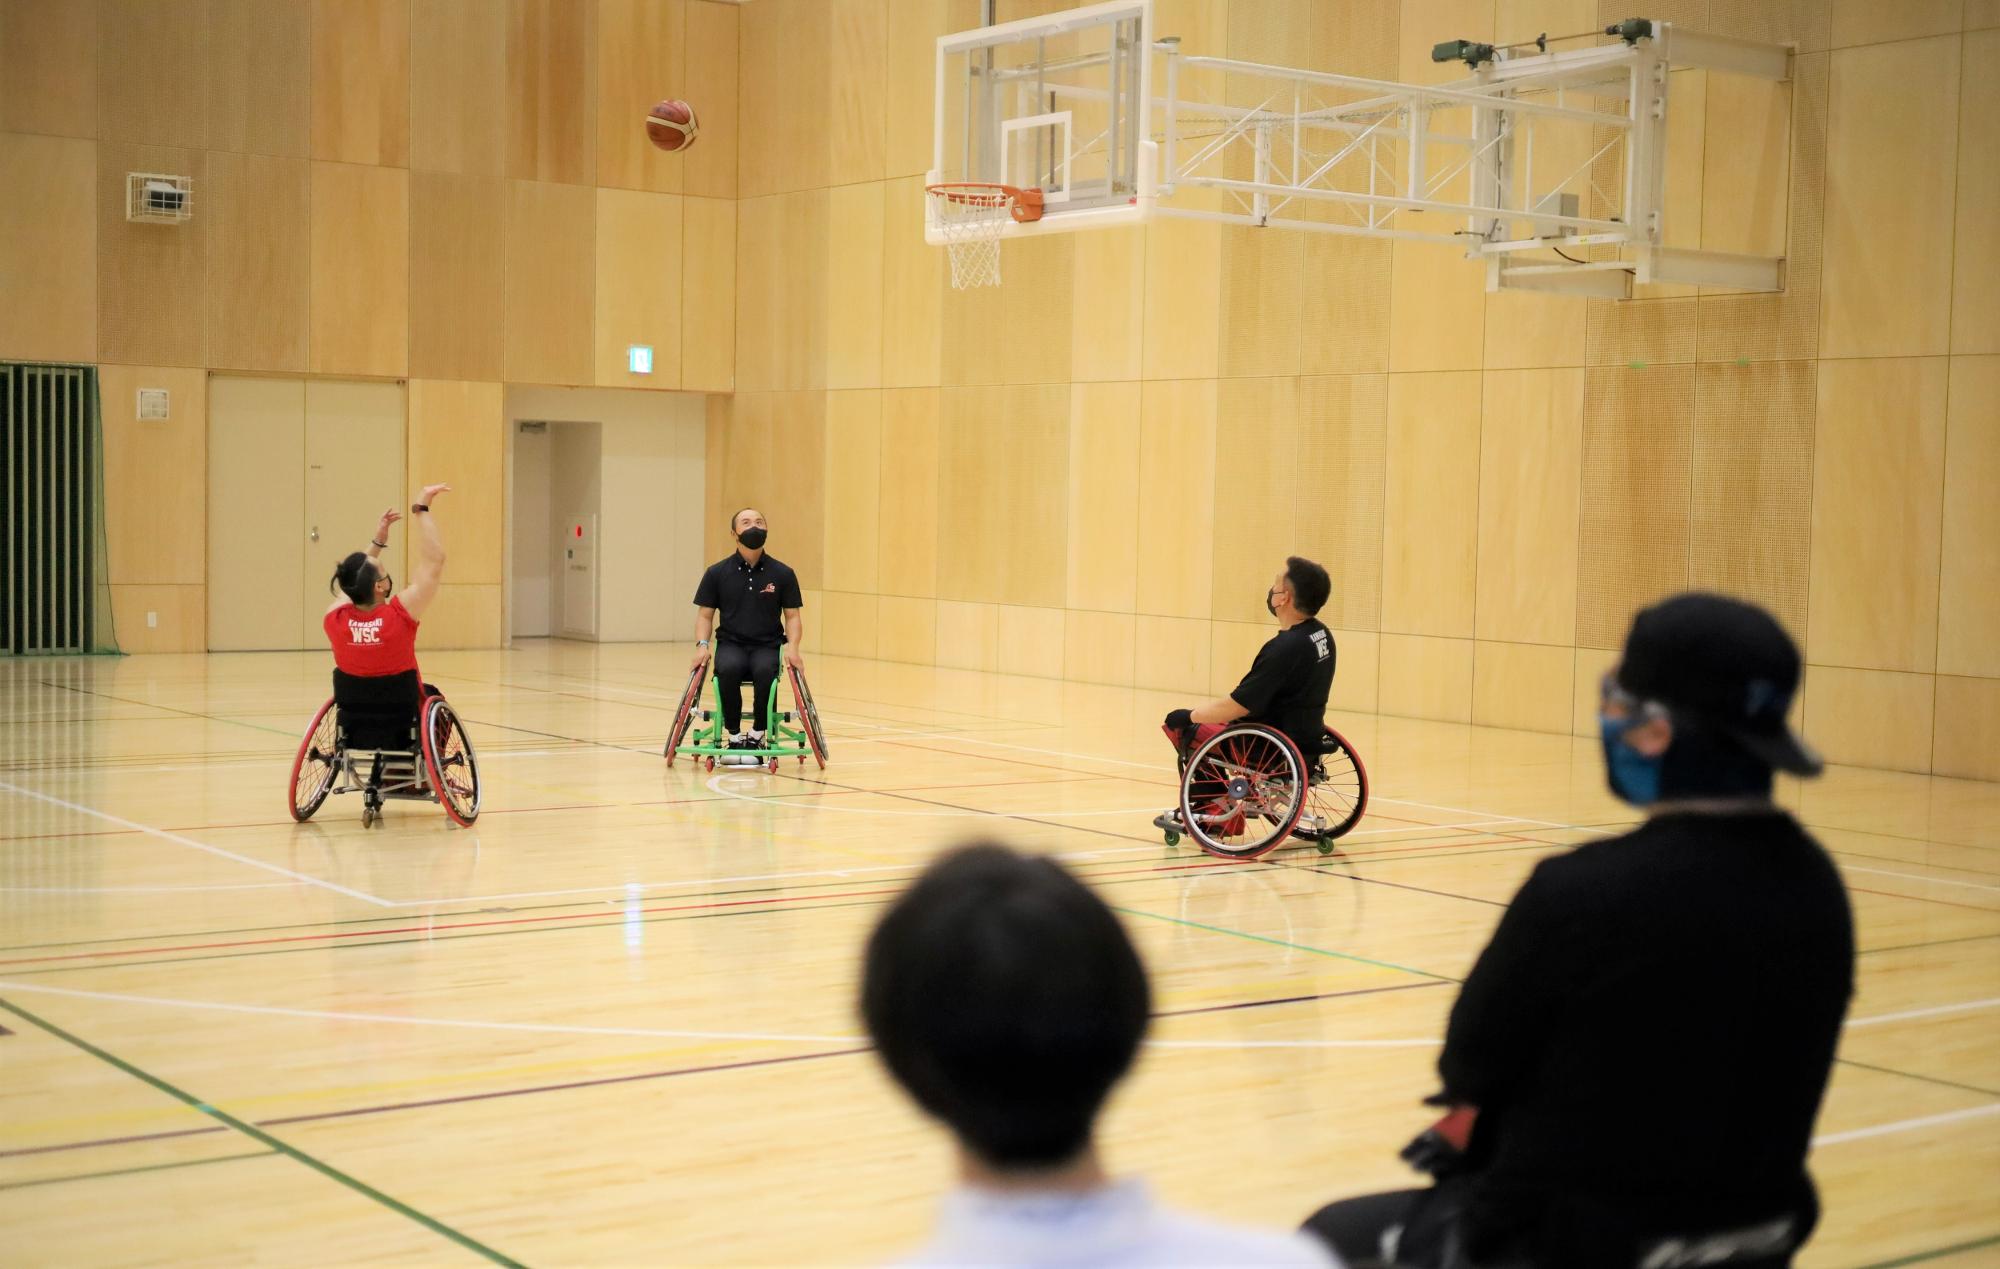 シドニーパラリンピック日本代表であり、カルッツかわさきでも練習をしていた車椅子バスケットボールチーム「川崎 WSC」の佐々木勝也選手によるデモンストレーション。その技術に参加者らも魅了された。